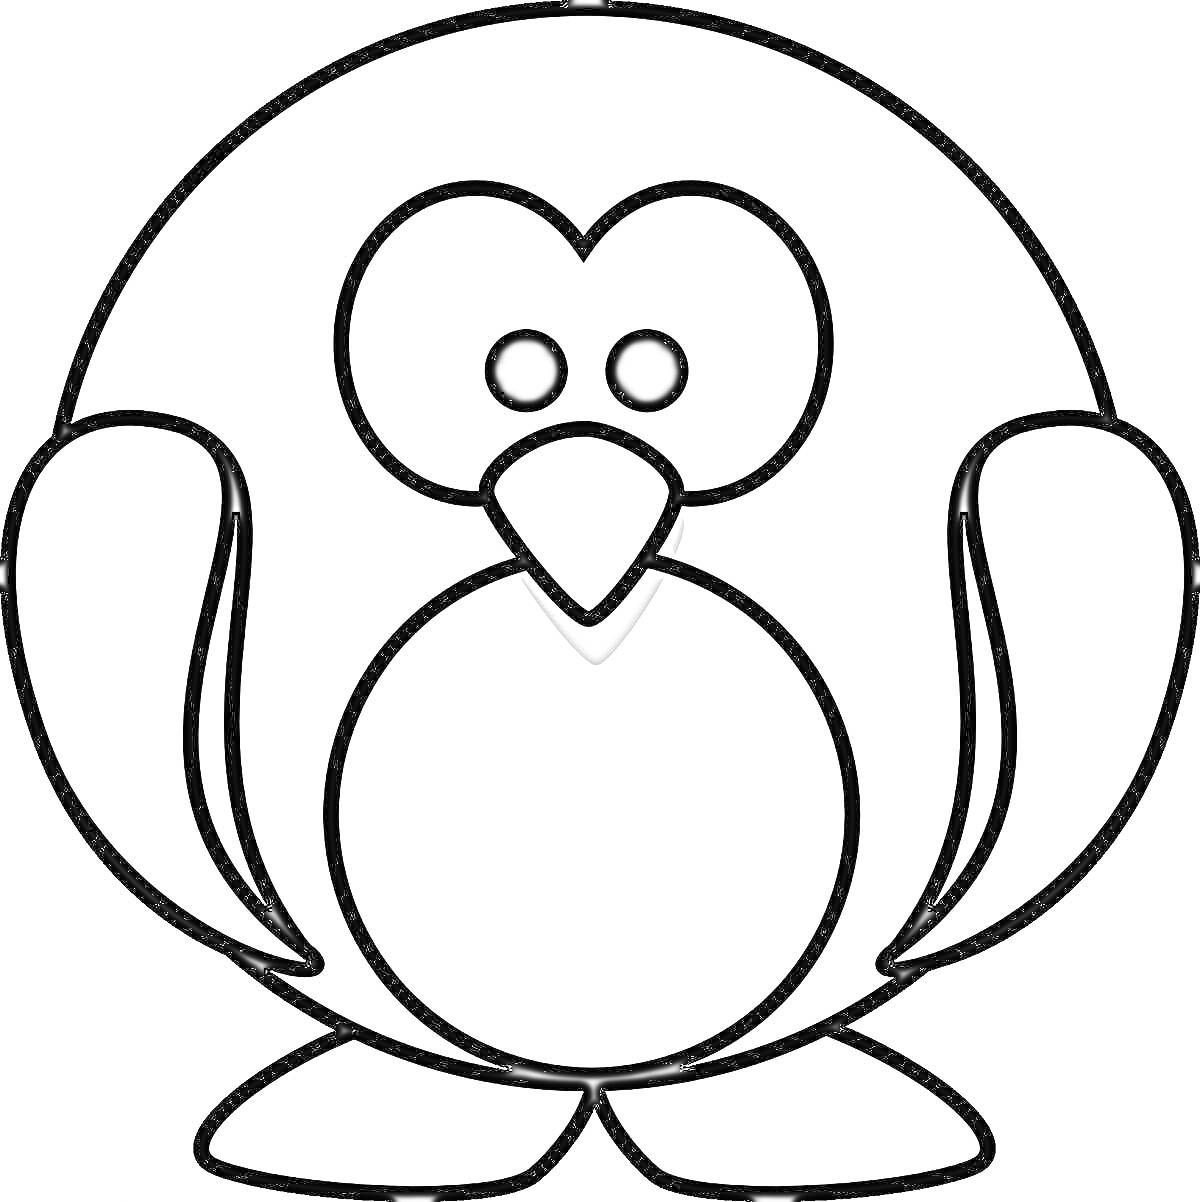 Раскраска Пингвинчик с округлым телом и крыльями по бокам